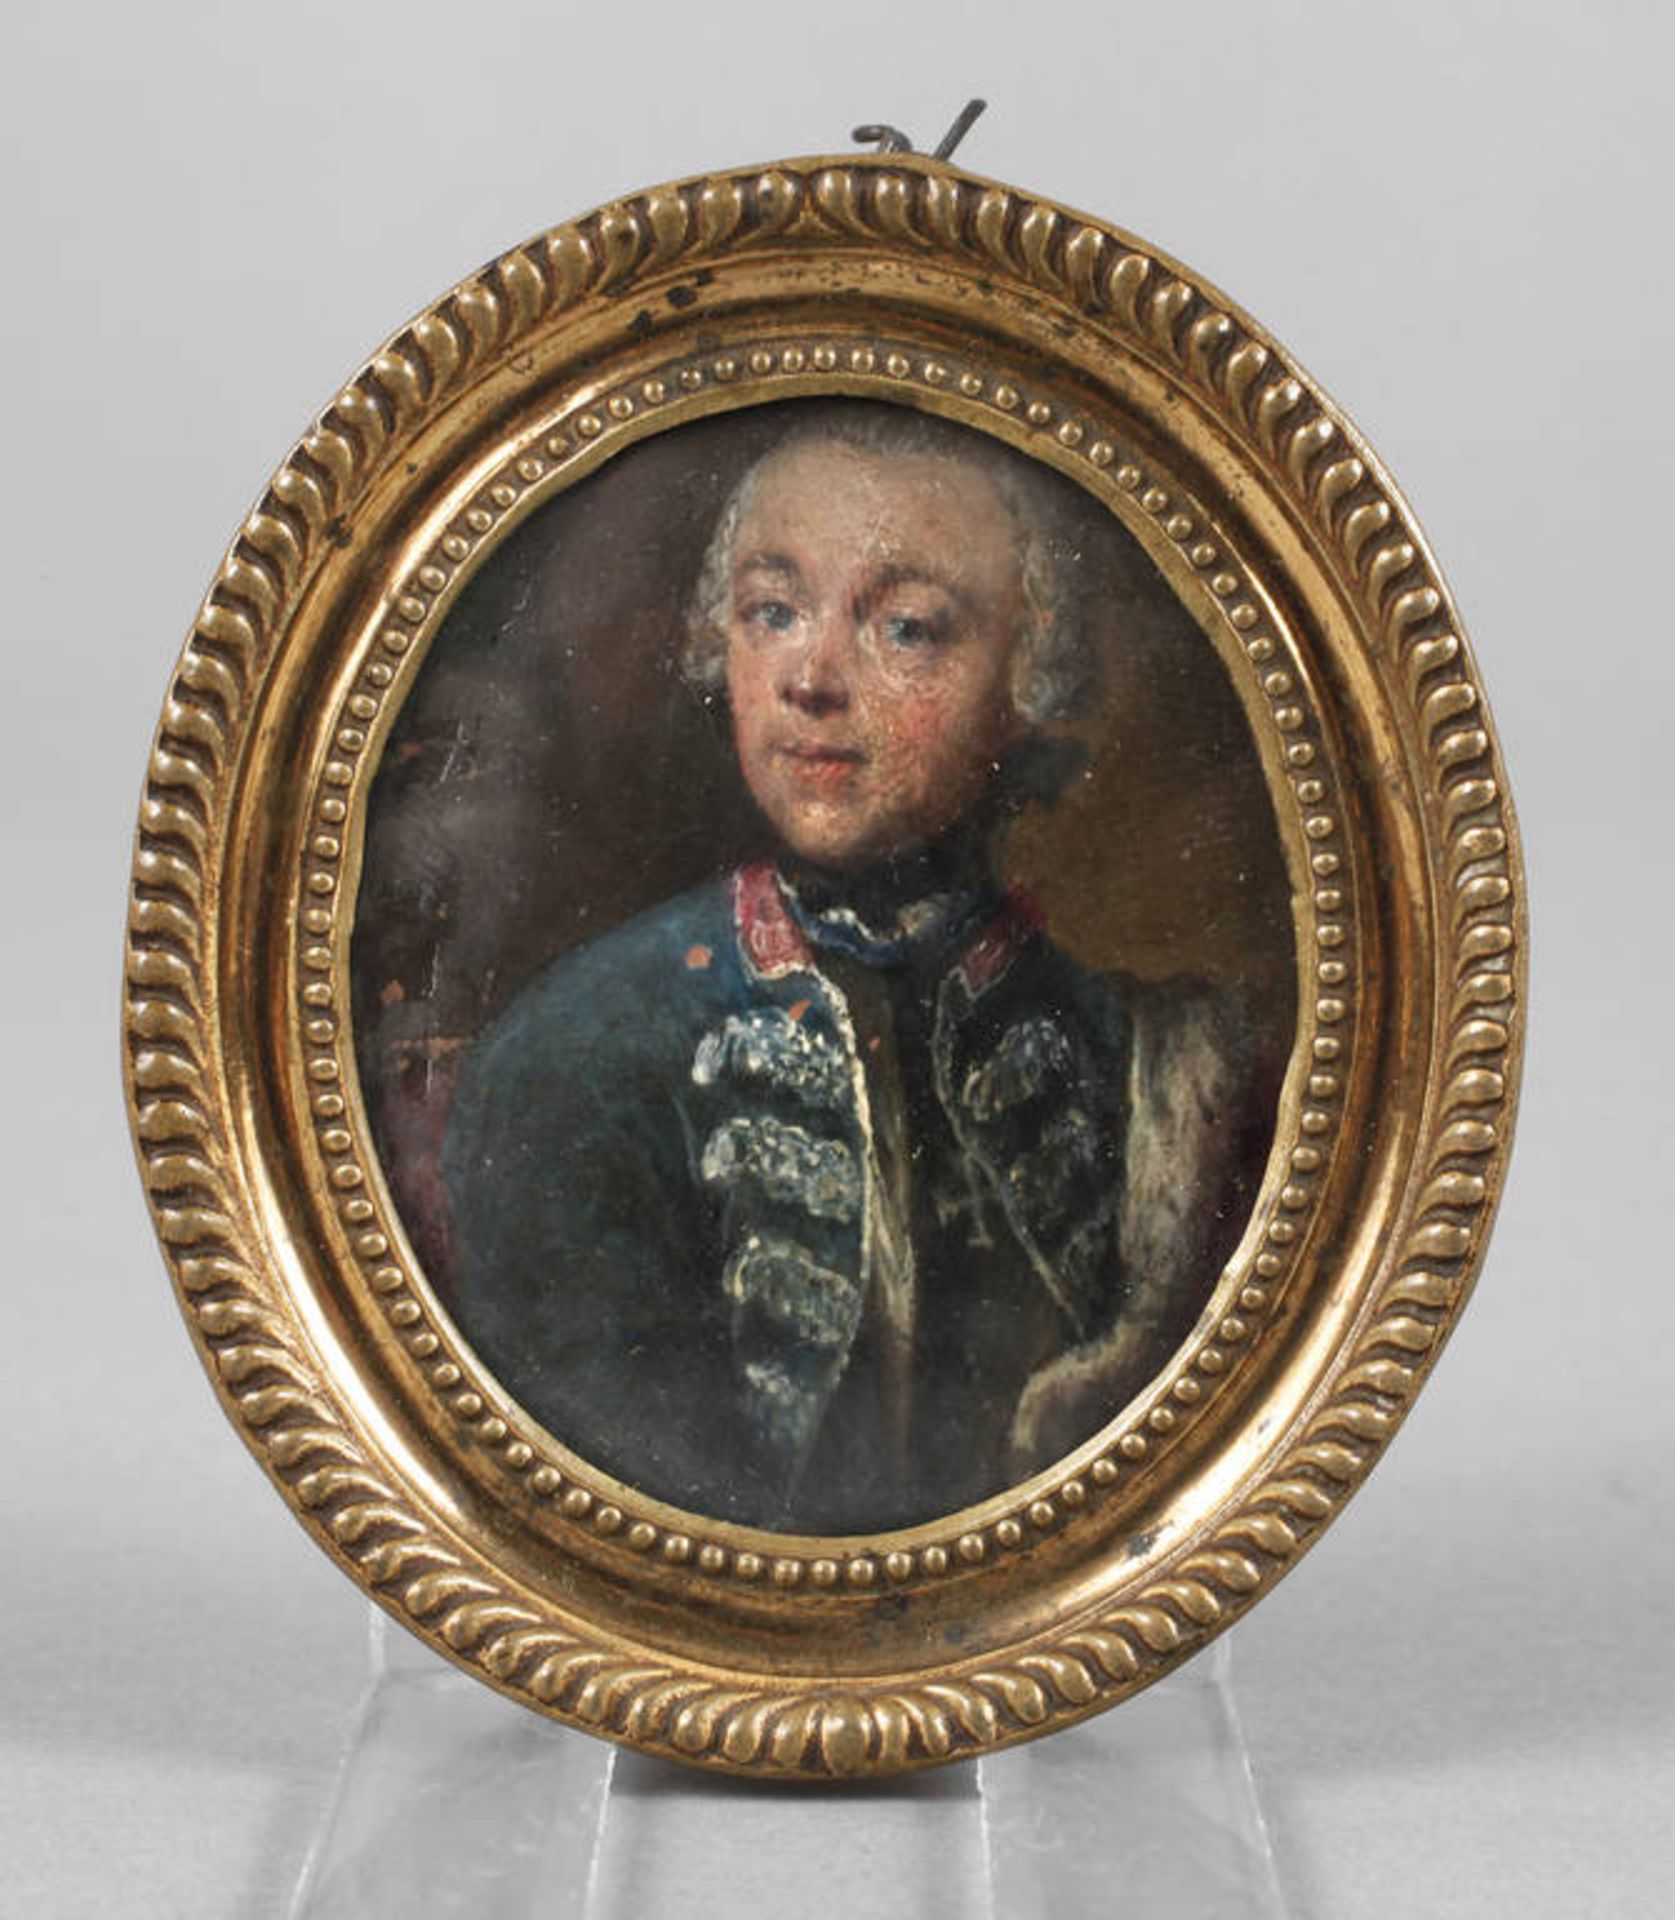 Barocke Miniatur
18. Jh., unsigniert, Öl auf Kupferblech, Bruststück eines galanten jungen Mannes im